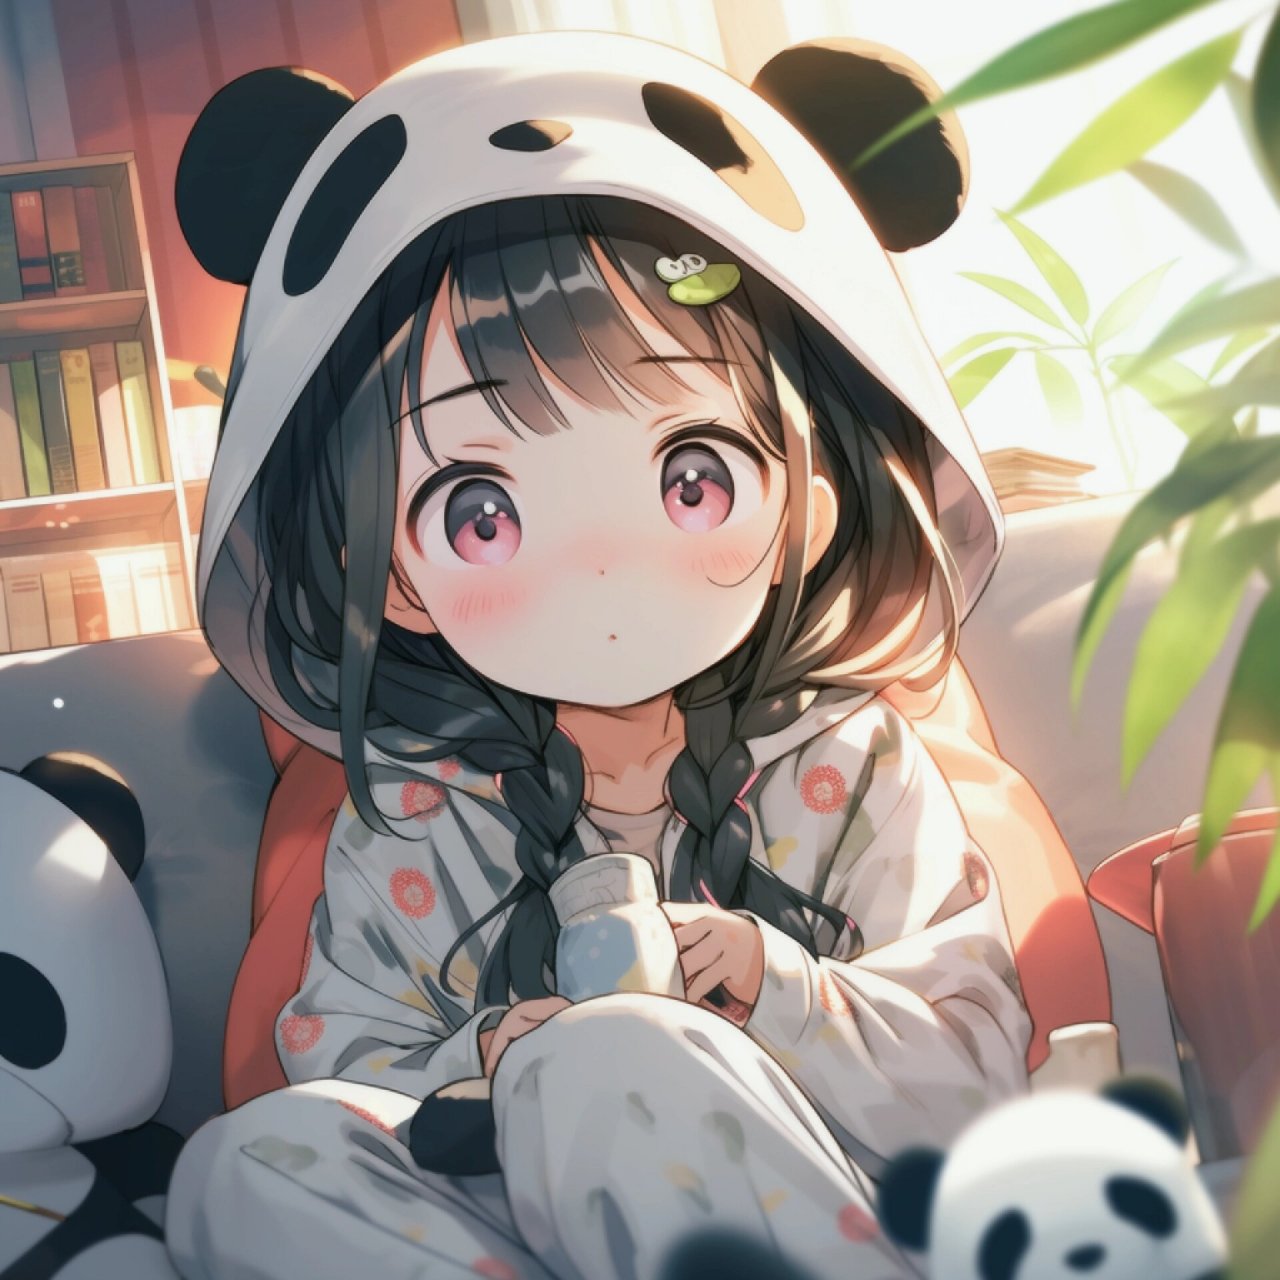 穿熊猫睡衣的动漫人物图片